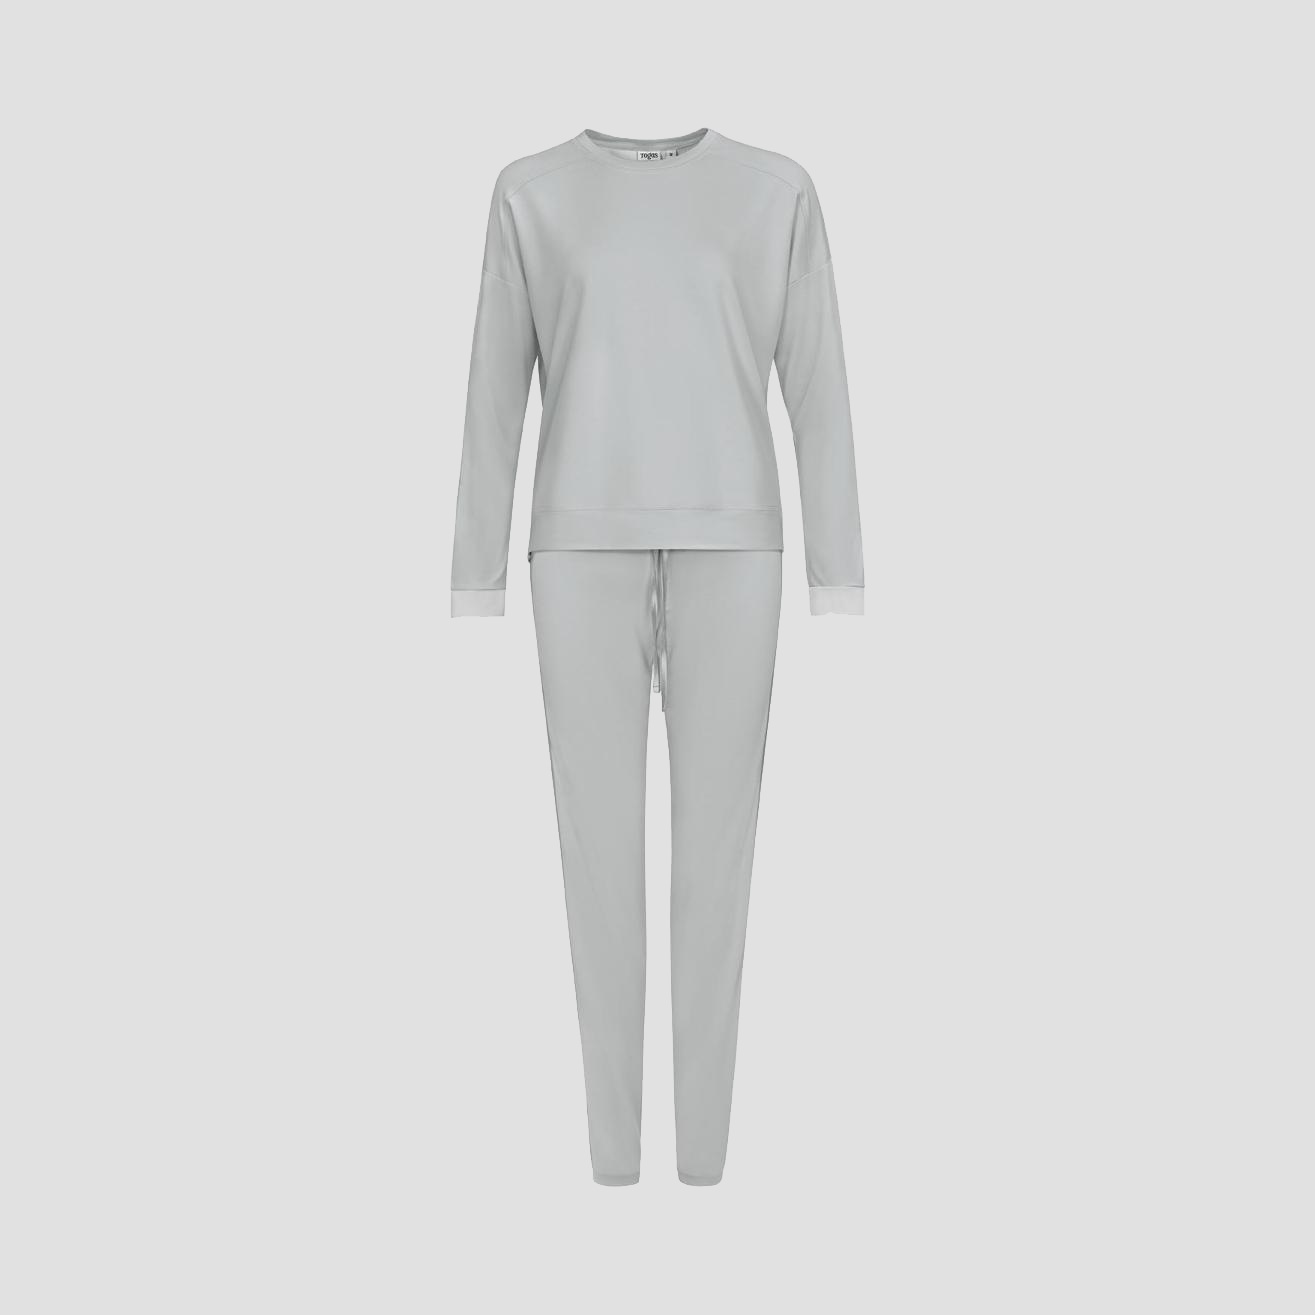 Пижама Togas Рене серая женская XL/50, цвет серый, размер 50